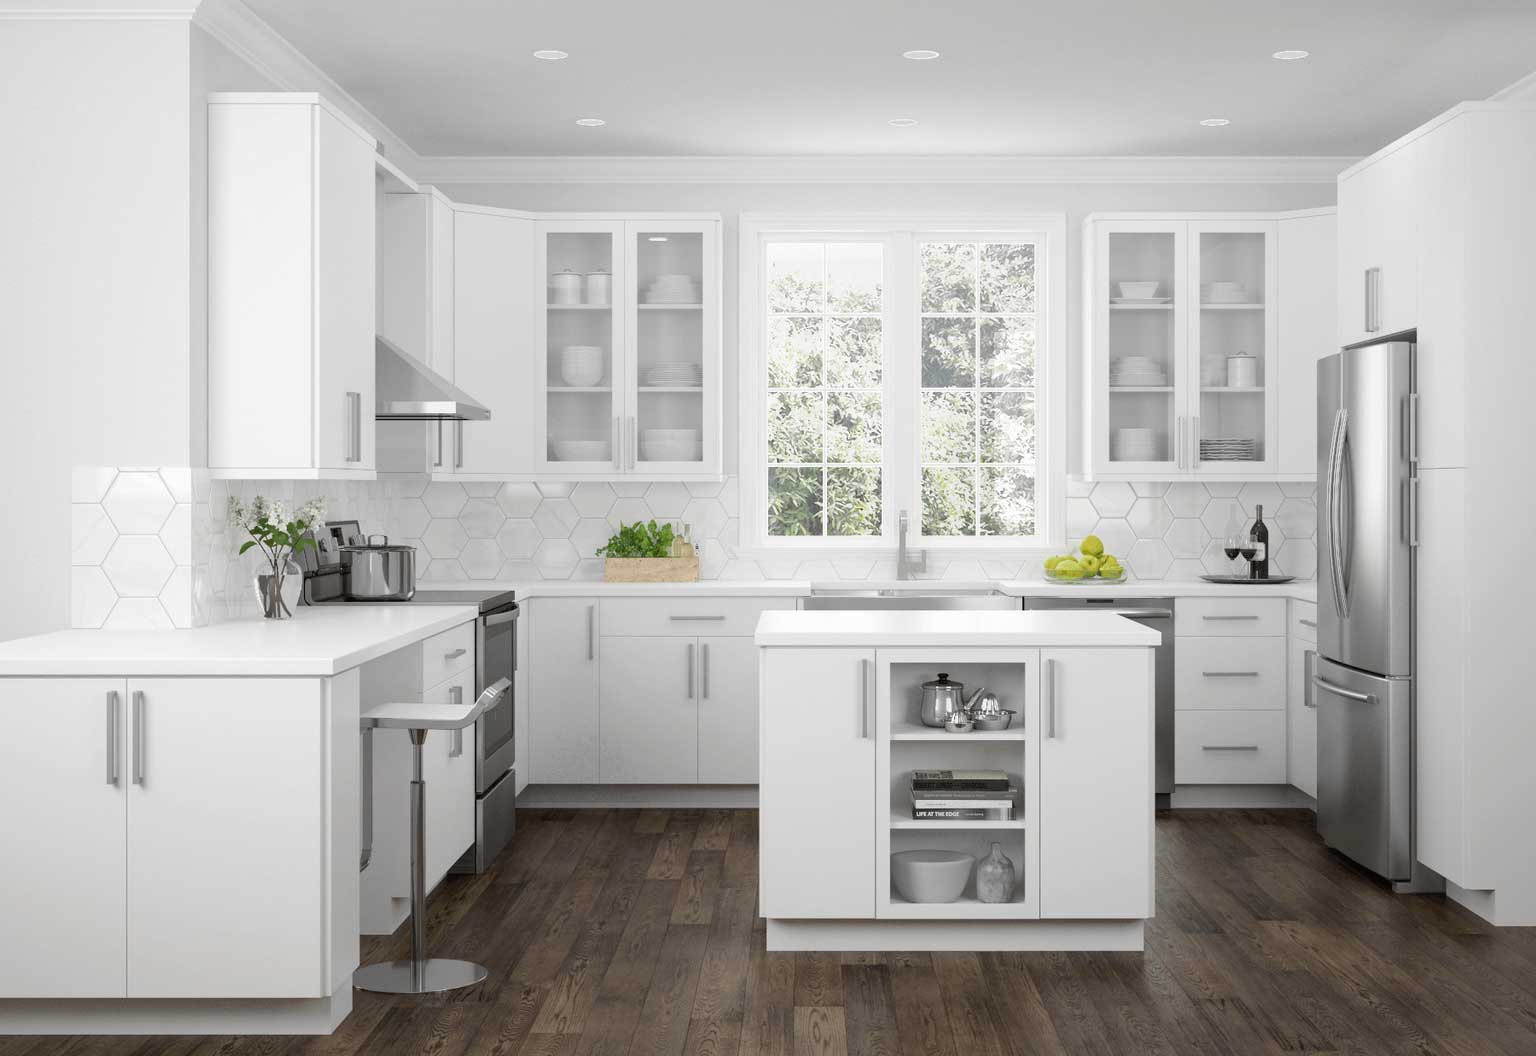 Hampton Bay Kitchen Cabinets